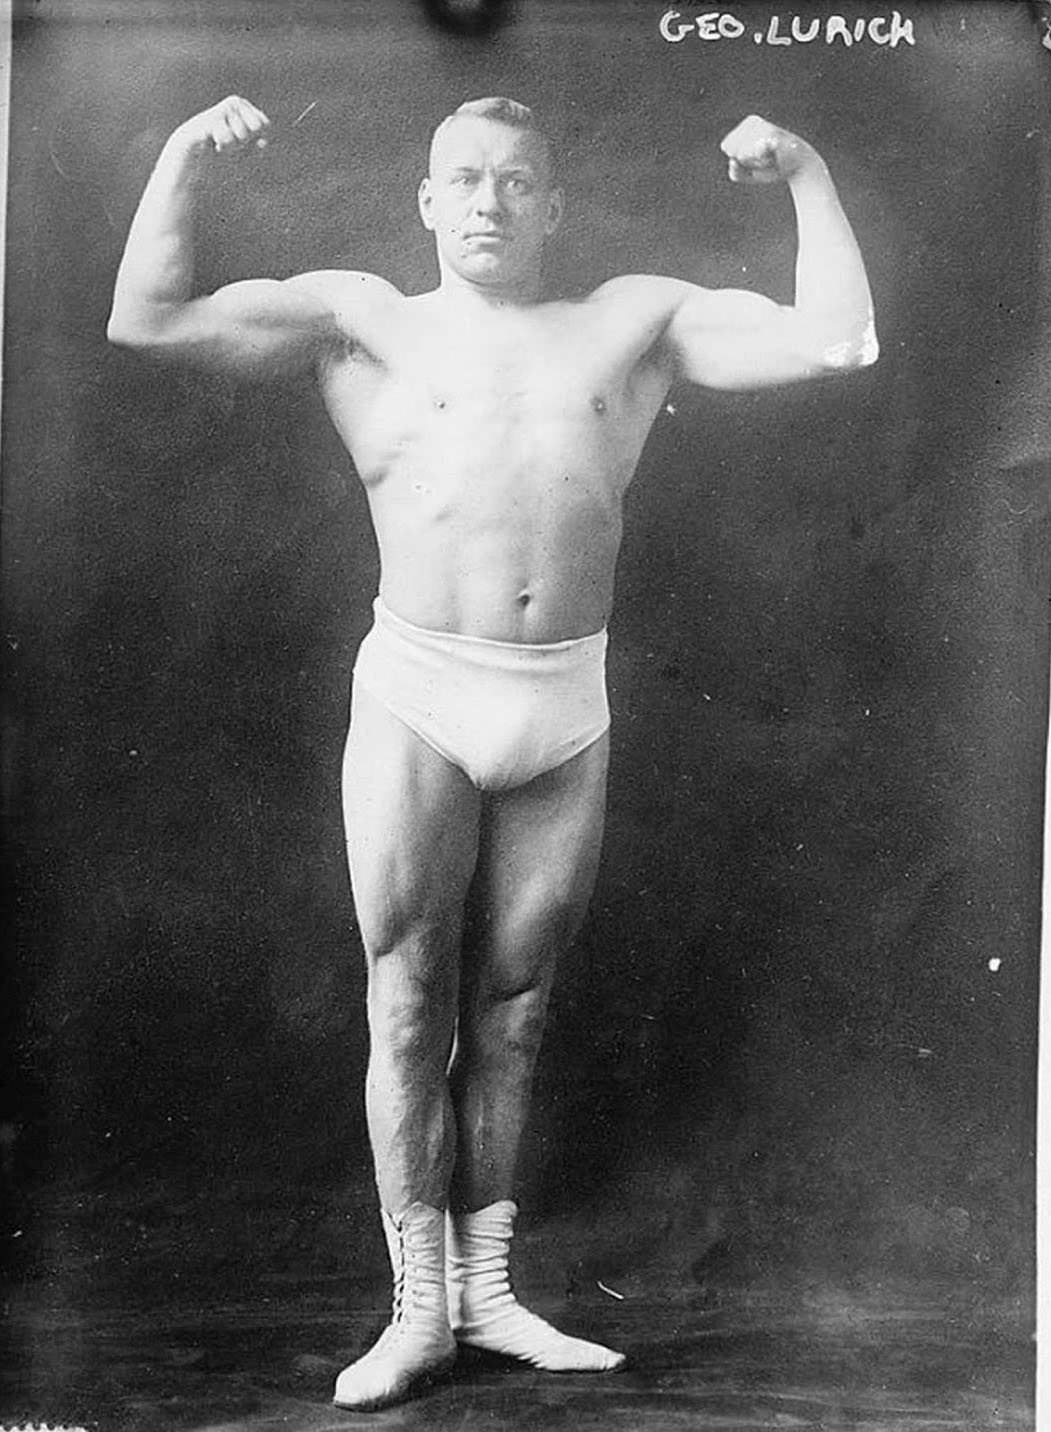 Georg Lurich, 1910.